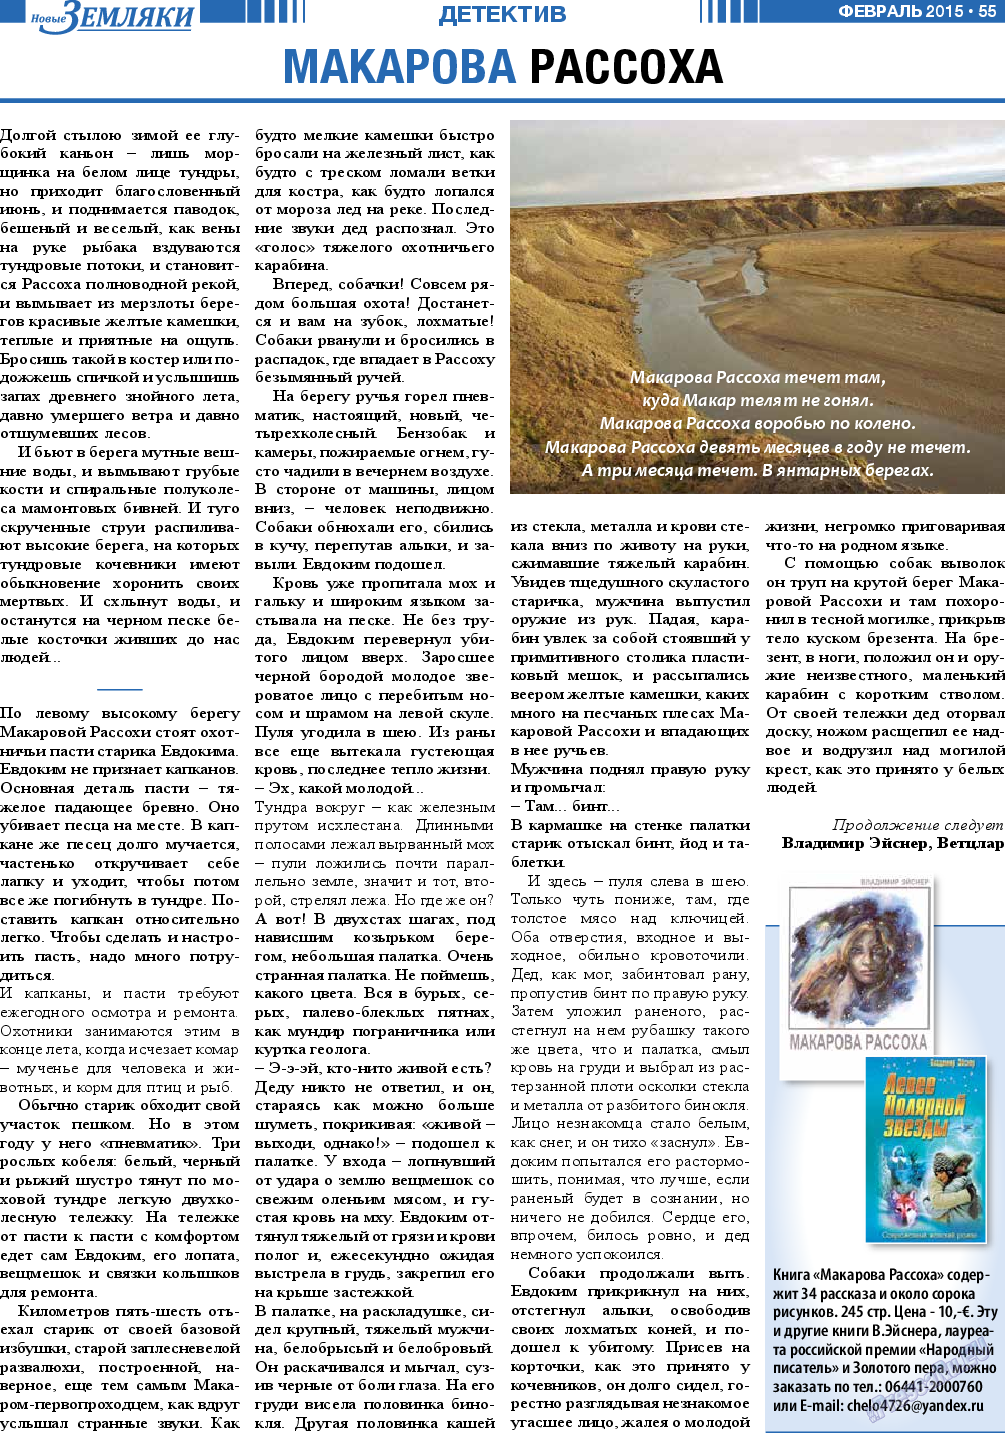 Новые Земляки, газета. 2015 №2 стр.55